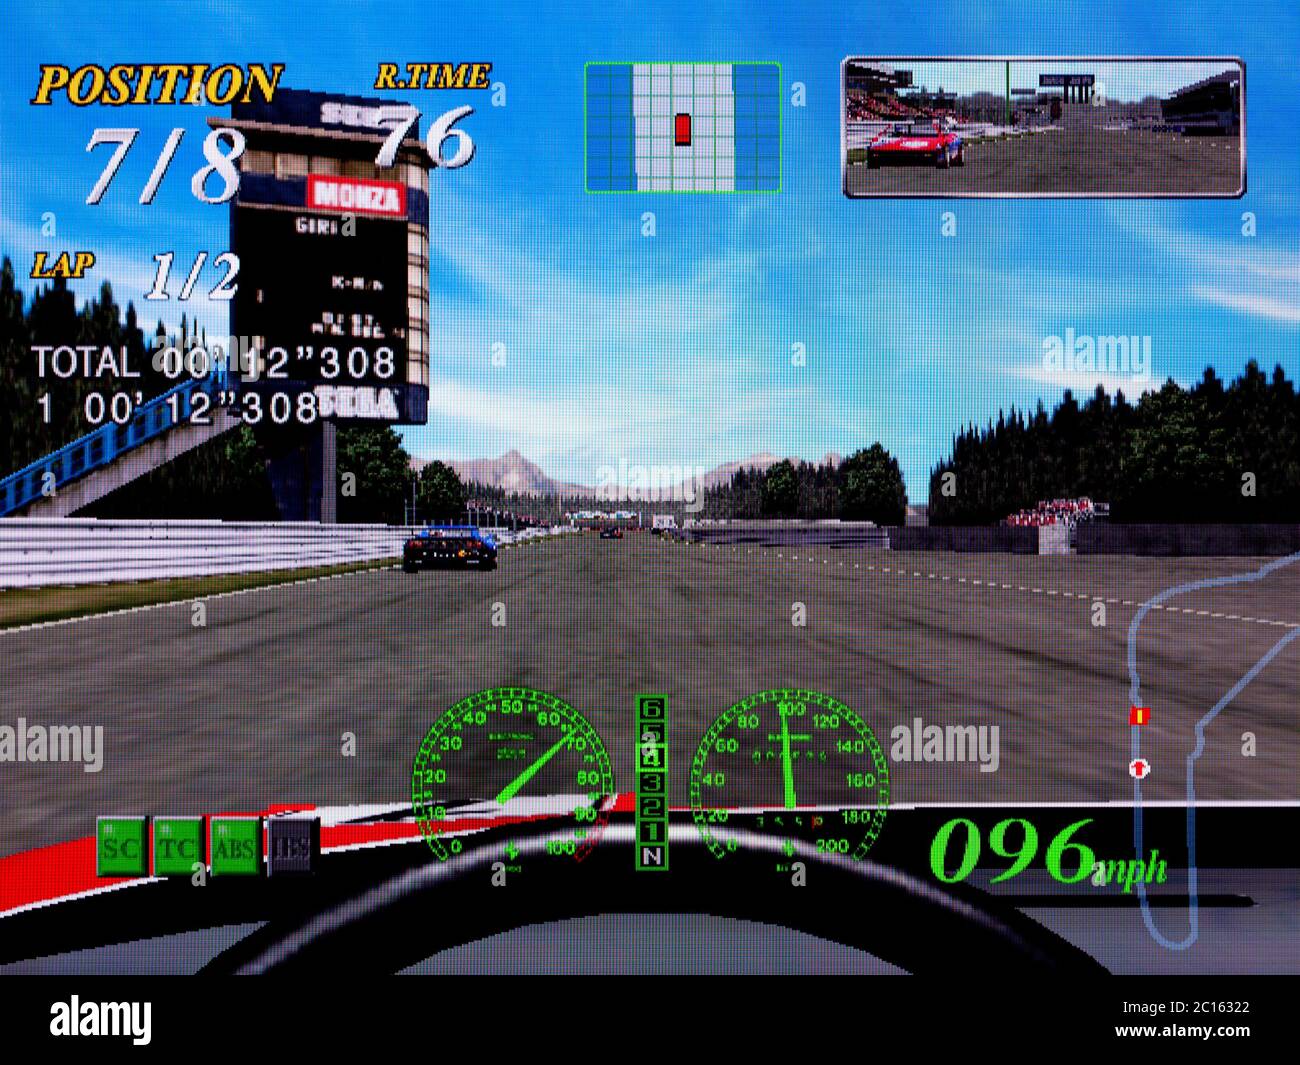 F355 Challenge Passione Rossa Ferrari - Sega Dreamcast Videogame - Editorial use only Stock Photo